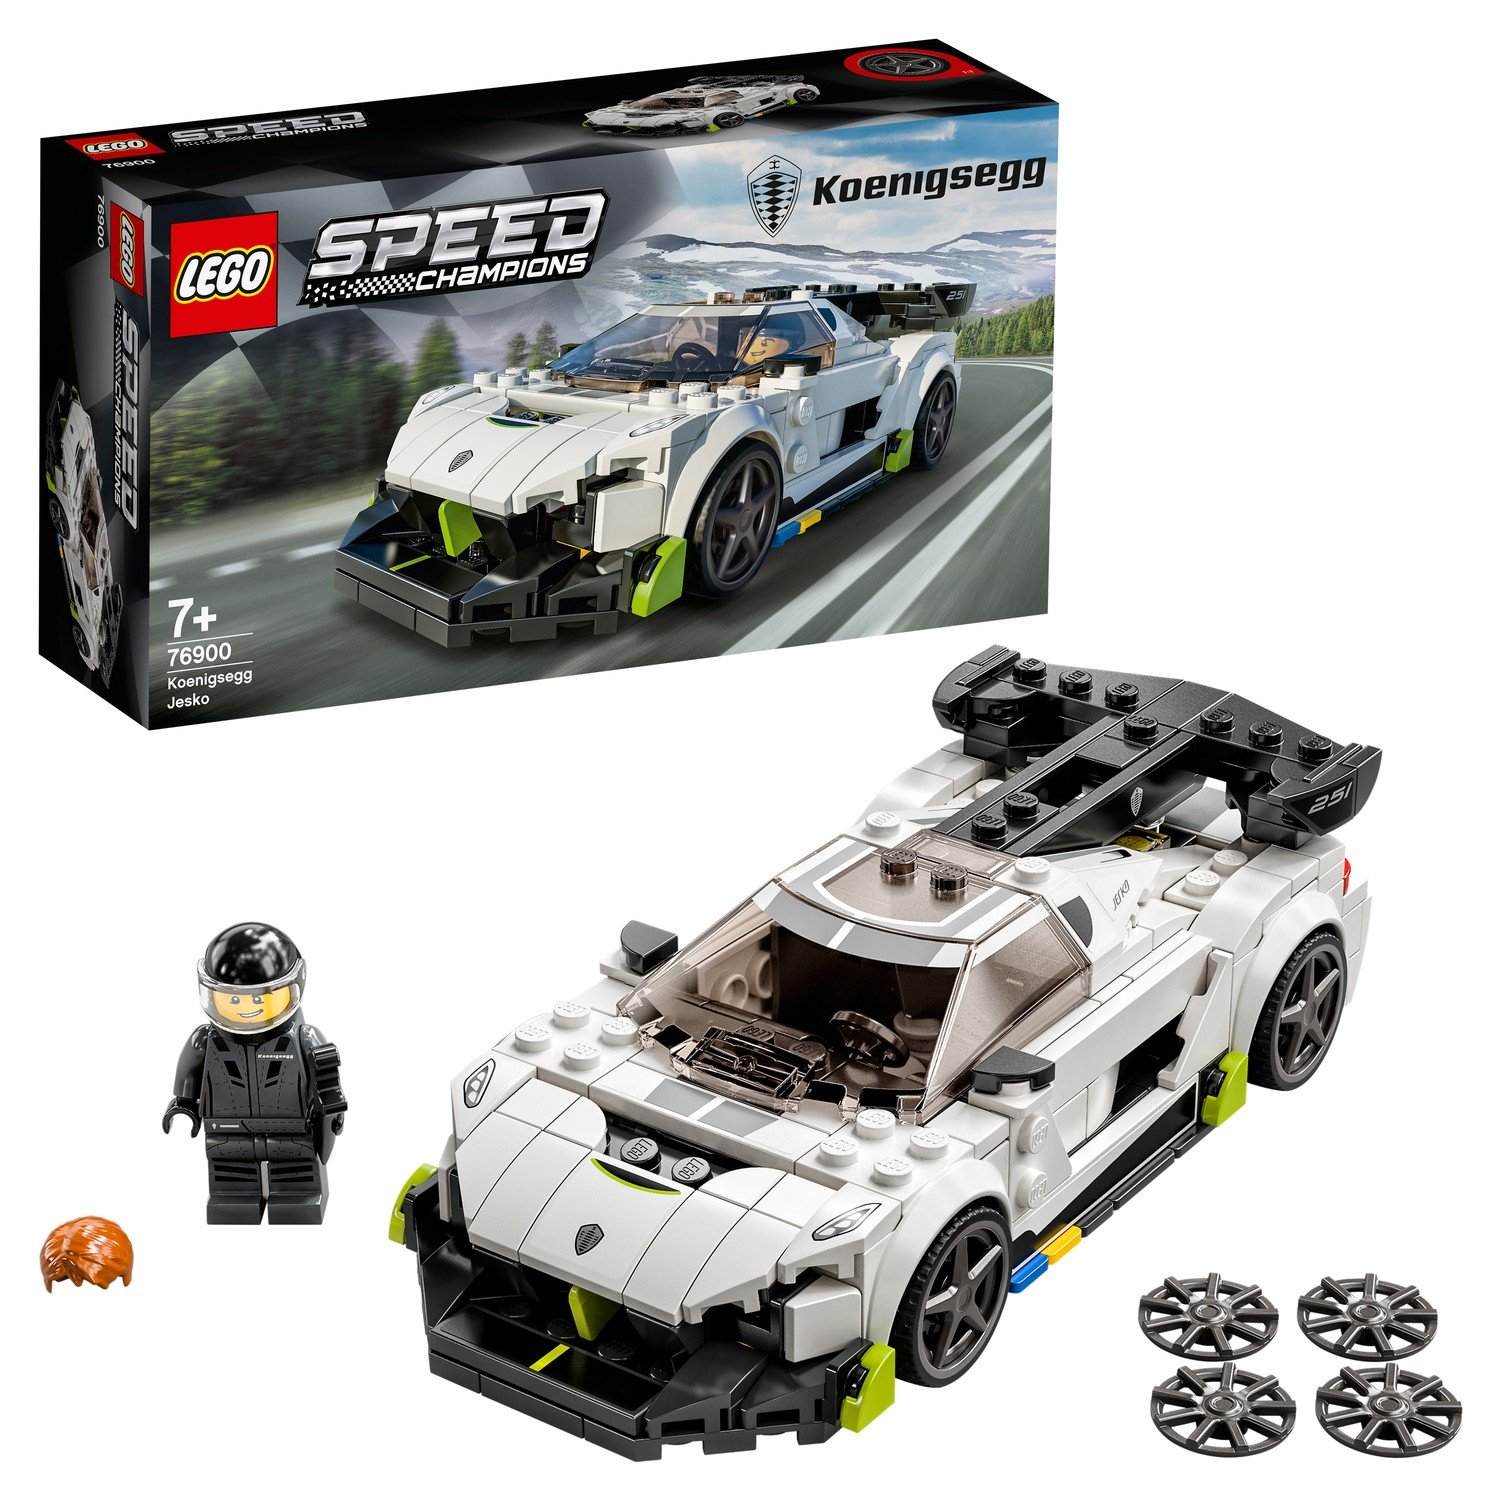 Конструктор LEGO Speed Champions Koenigsegg Jesko, 280 деталей, 76900 конструктор lego speed champions автомобиль skyline gt r r34 319 деталей